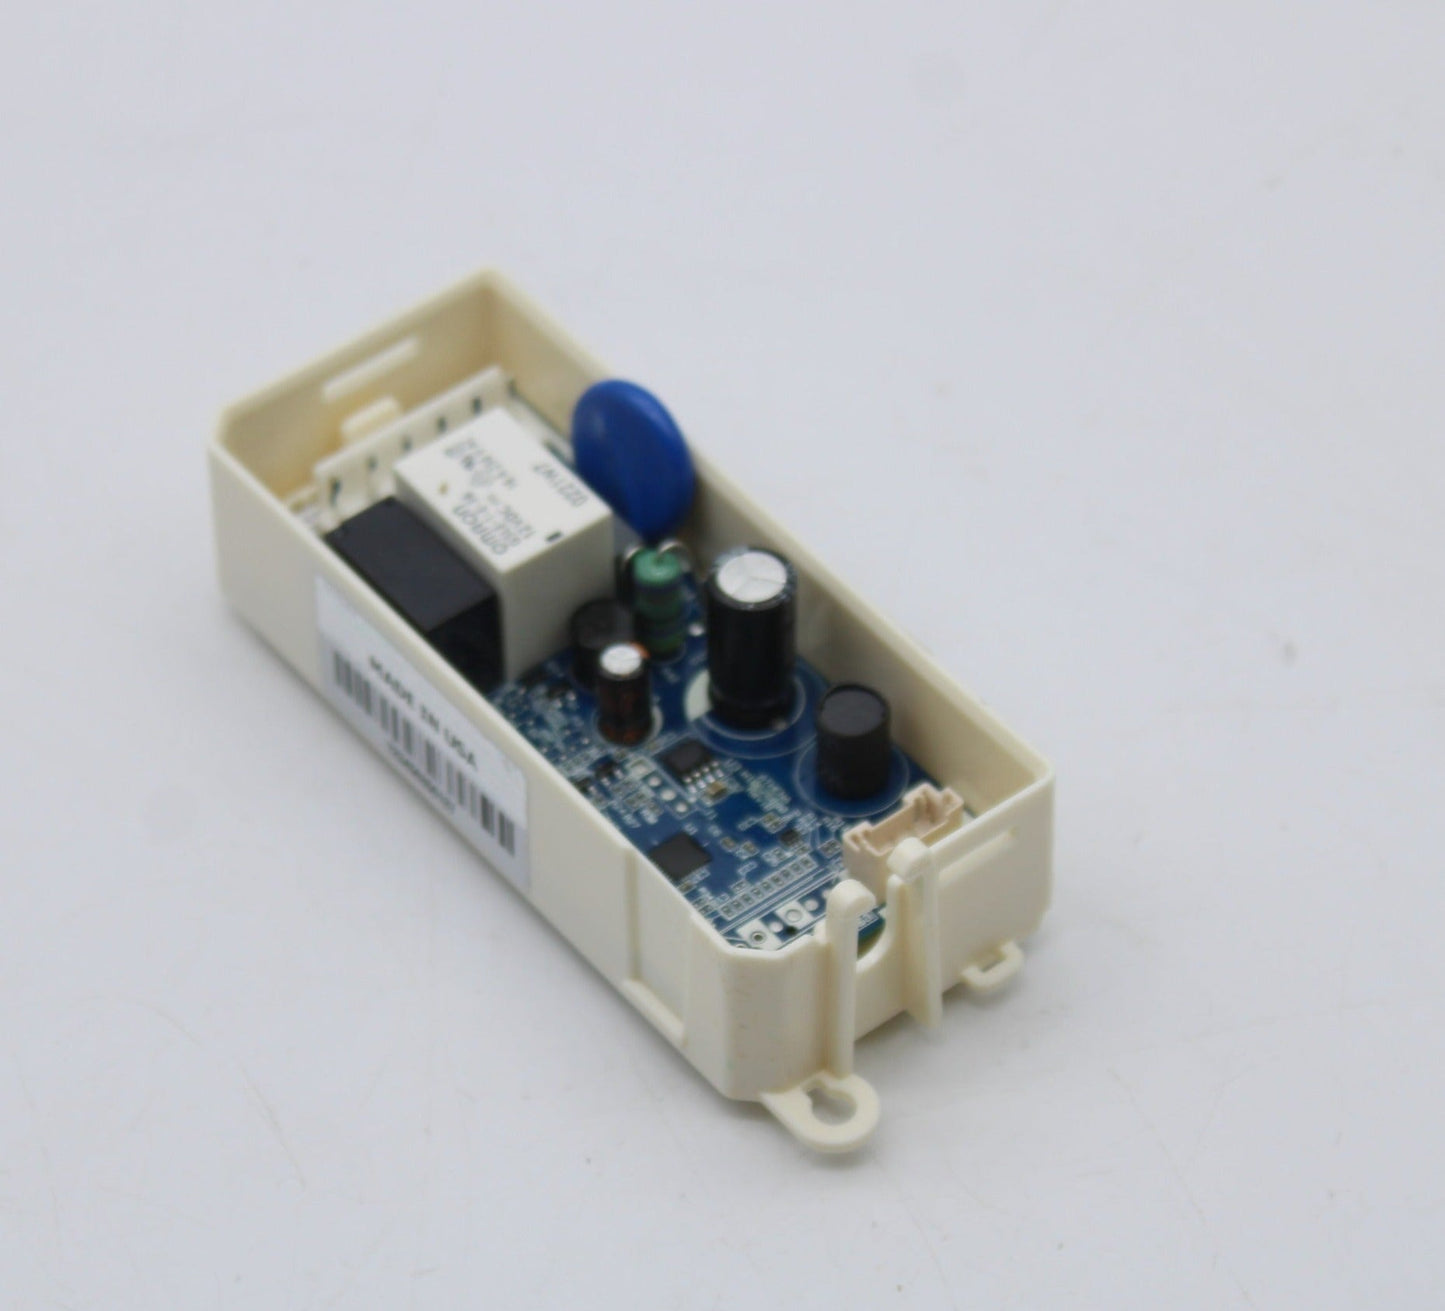 Whirlpool Refrigerator Electronic Control Board OEM -W11436572, Replaces: W10874481 W10912400 W11176894 W11176904 W11284481 W11409864 PD00069096